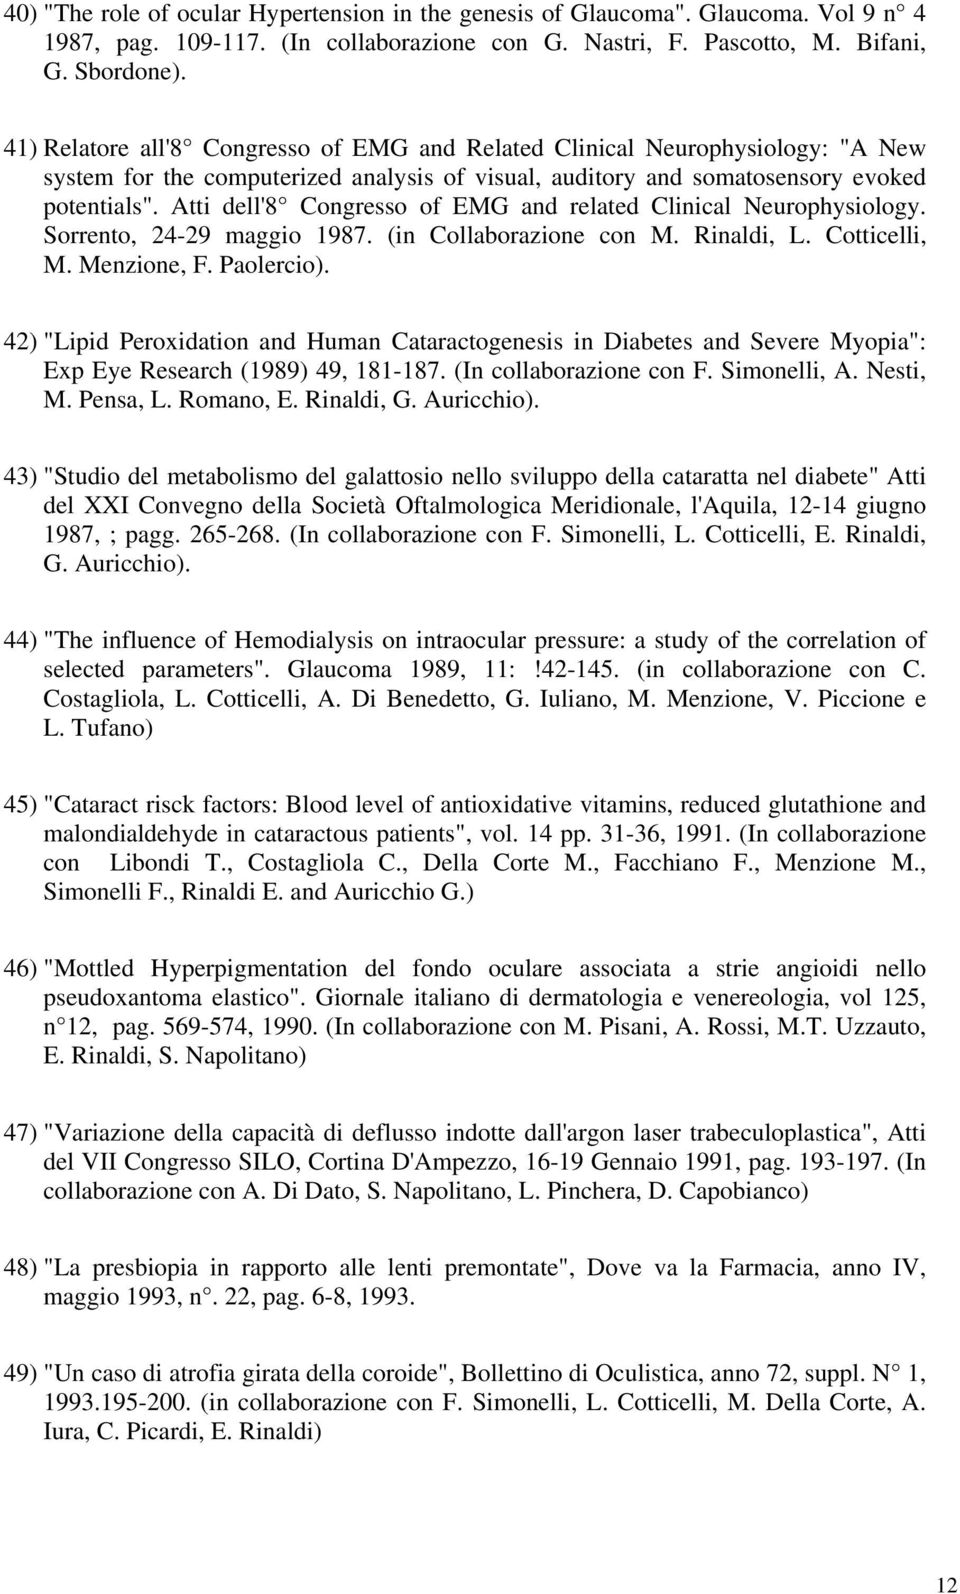 Atti dell'8 Congresso of EMG and related Clinical Neurophysiology. Sorrento, 24-29 maggio 1987. (in Collaborazione con M. Rinaldi, L. Cotticelli, M. Menzione, F. Paolercio).